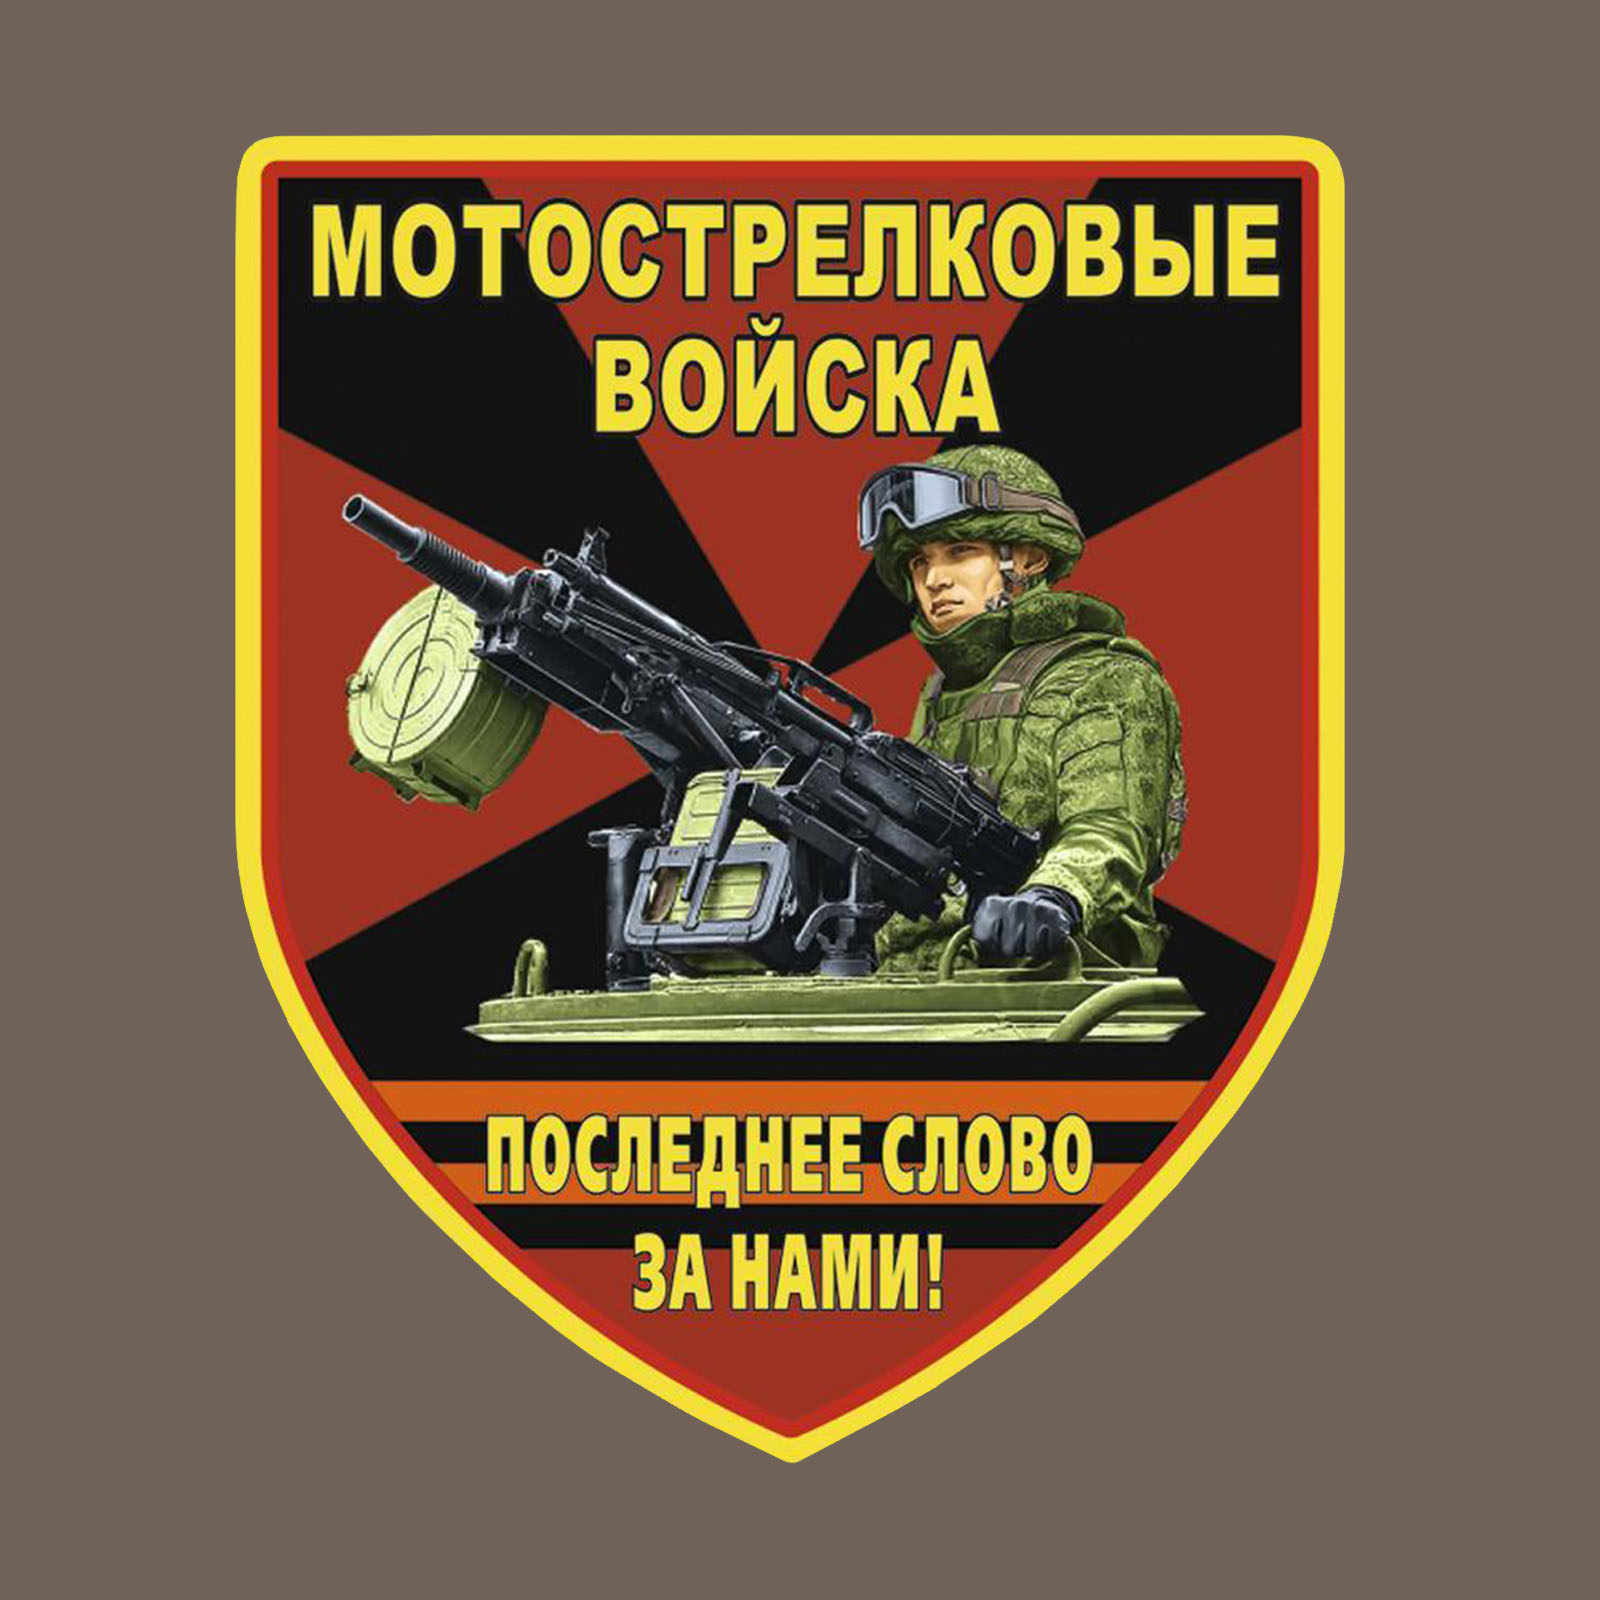 Оливковая футболка с термотрансфером "Мотострелковые войска" 